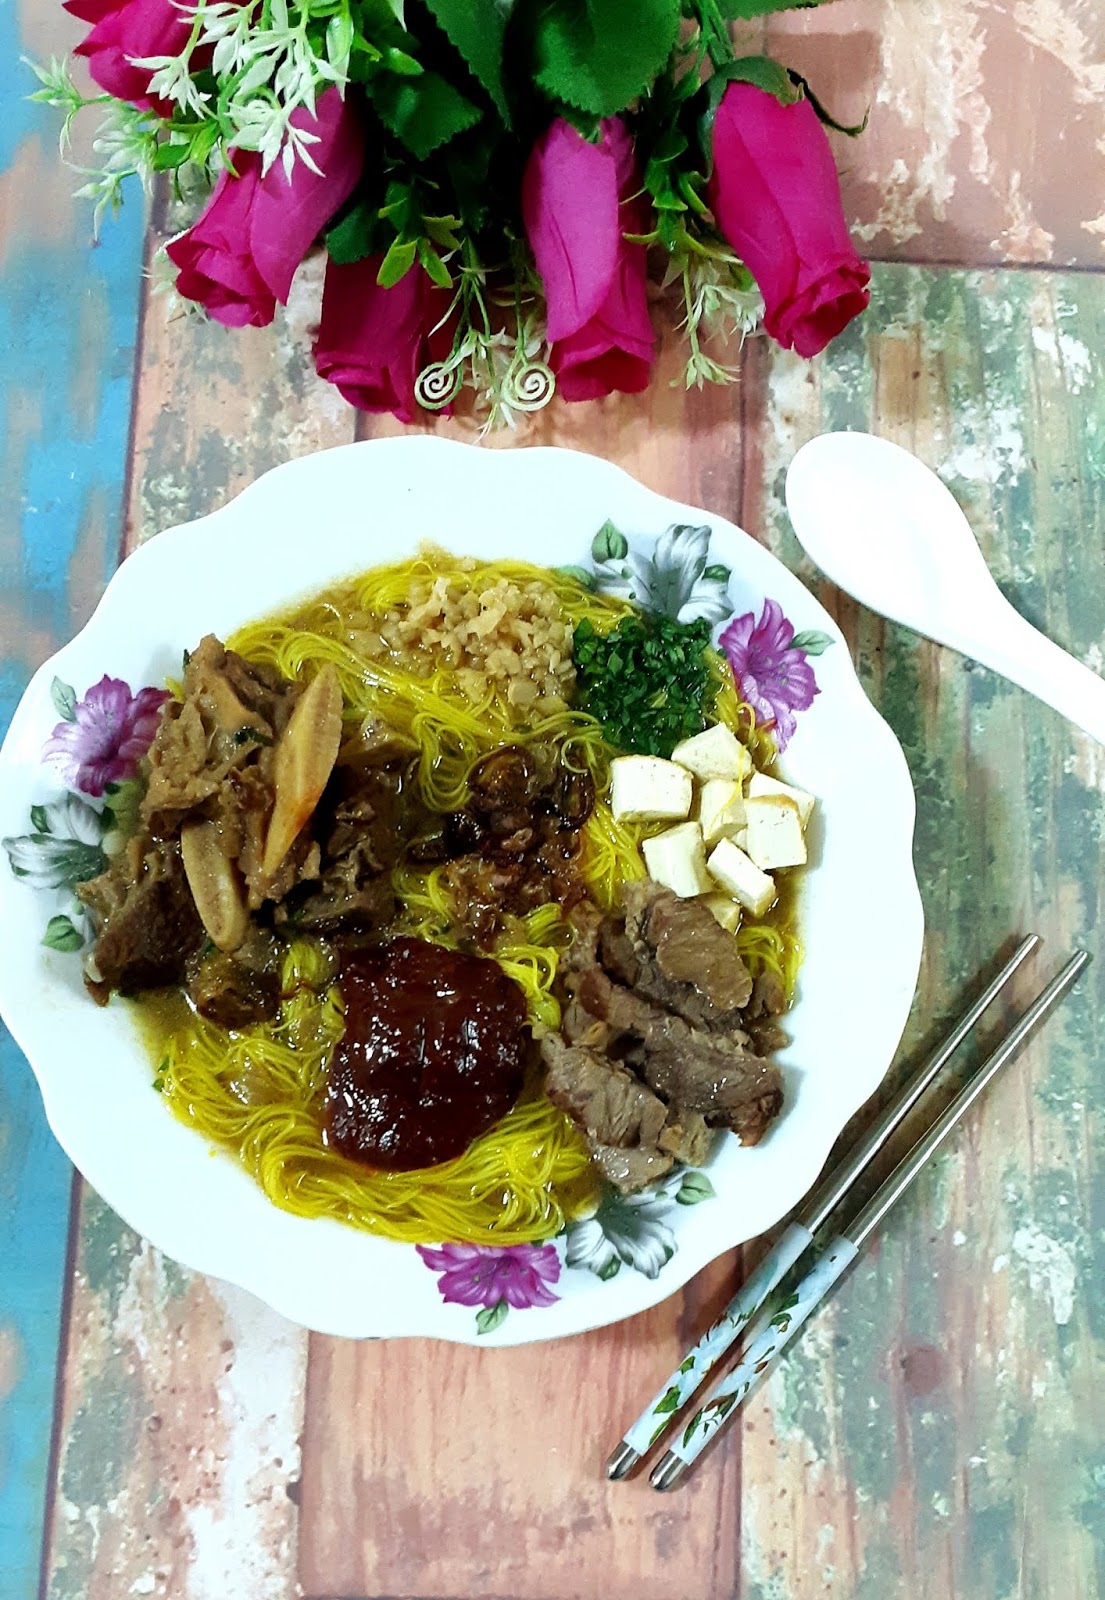 Diari Zaliedana: Resepi Lengkap & RAHSIA Bihun Sup Utara 